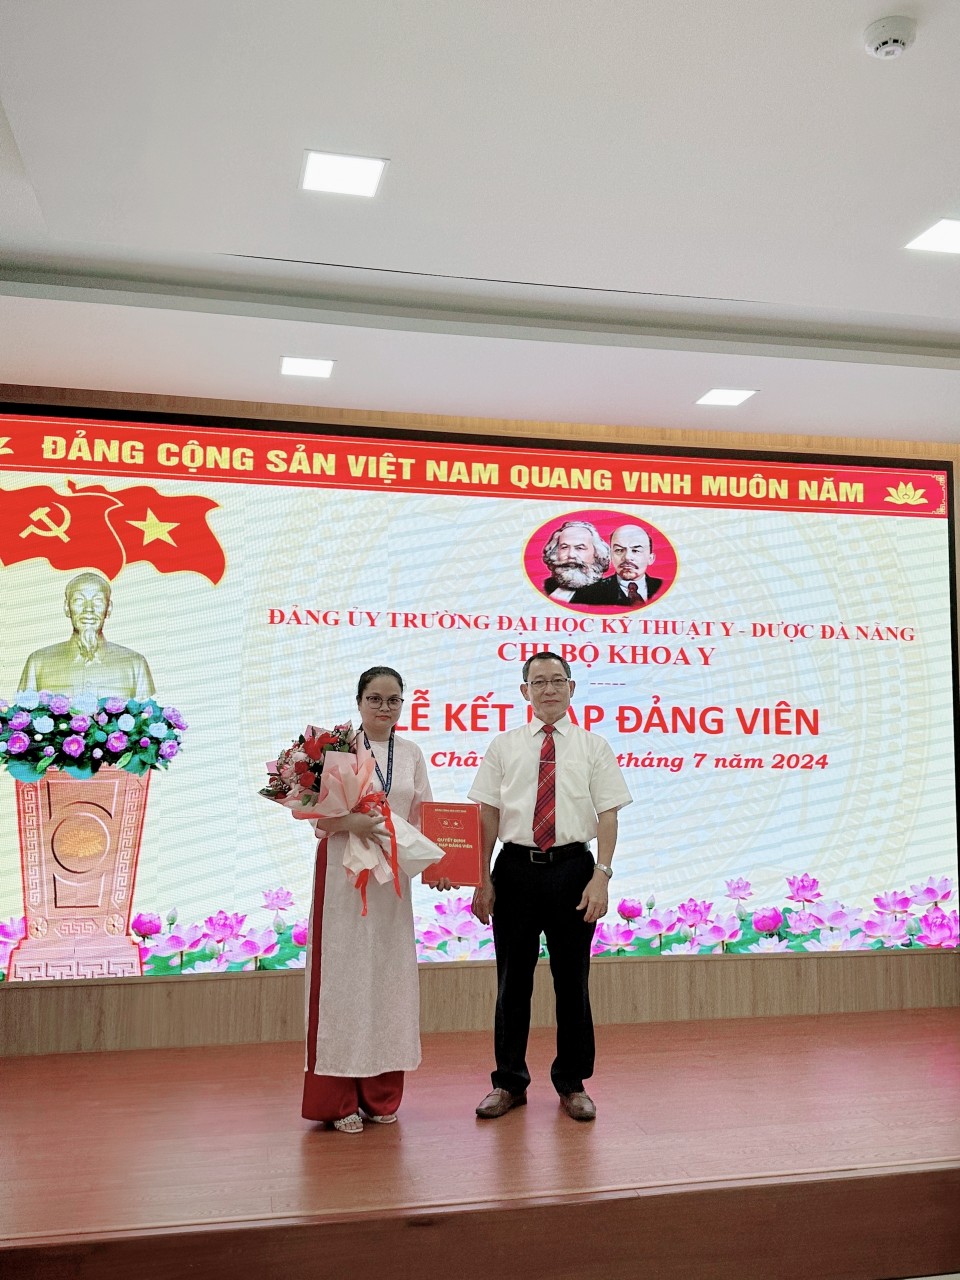 Chúc mừng Ths.Bs Lê Ngọc Khánh Linh, giảng viên bộ môn Nội-Lây-Y học, Khoa Y được kết nạp vào Đảng cộng sản Việt Nam